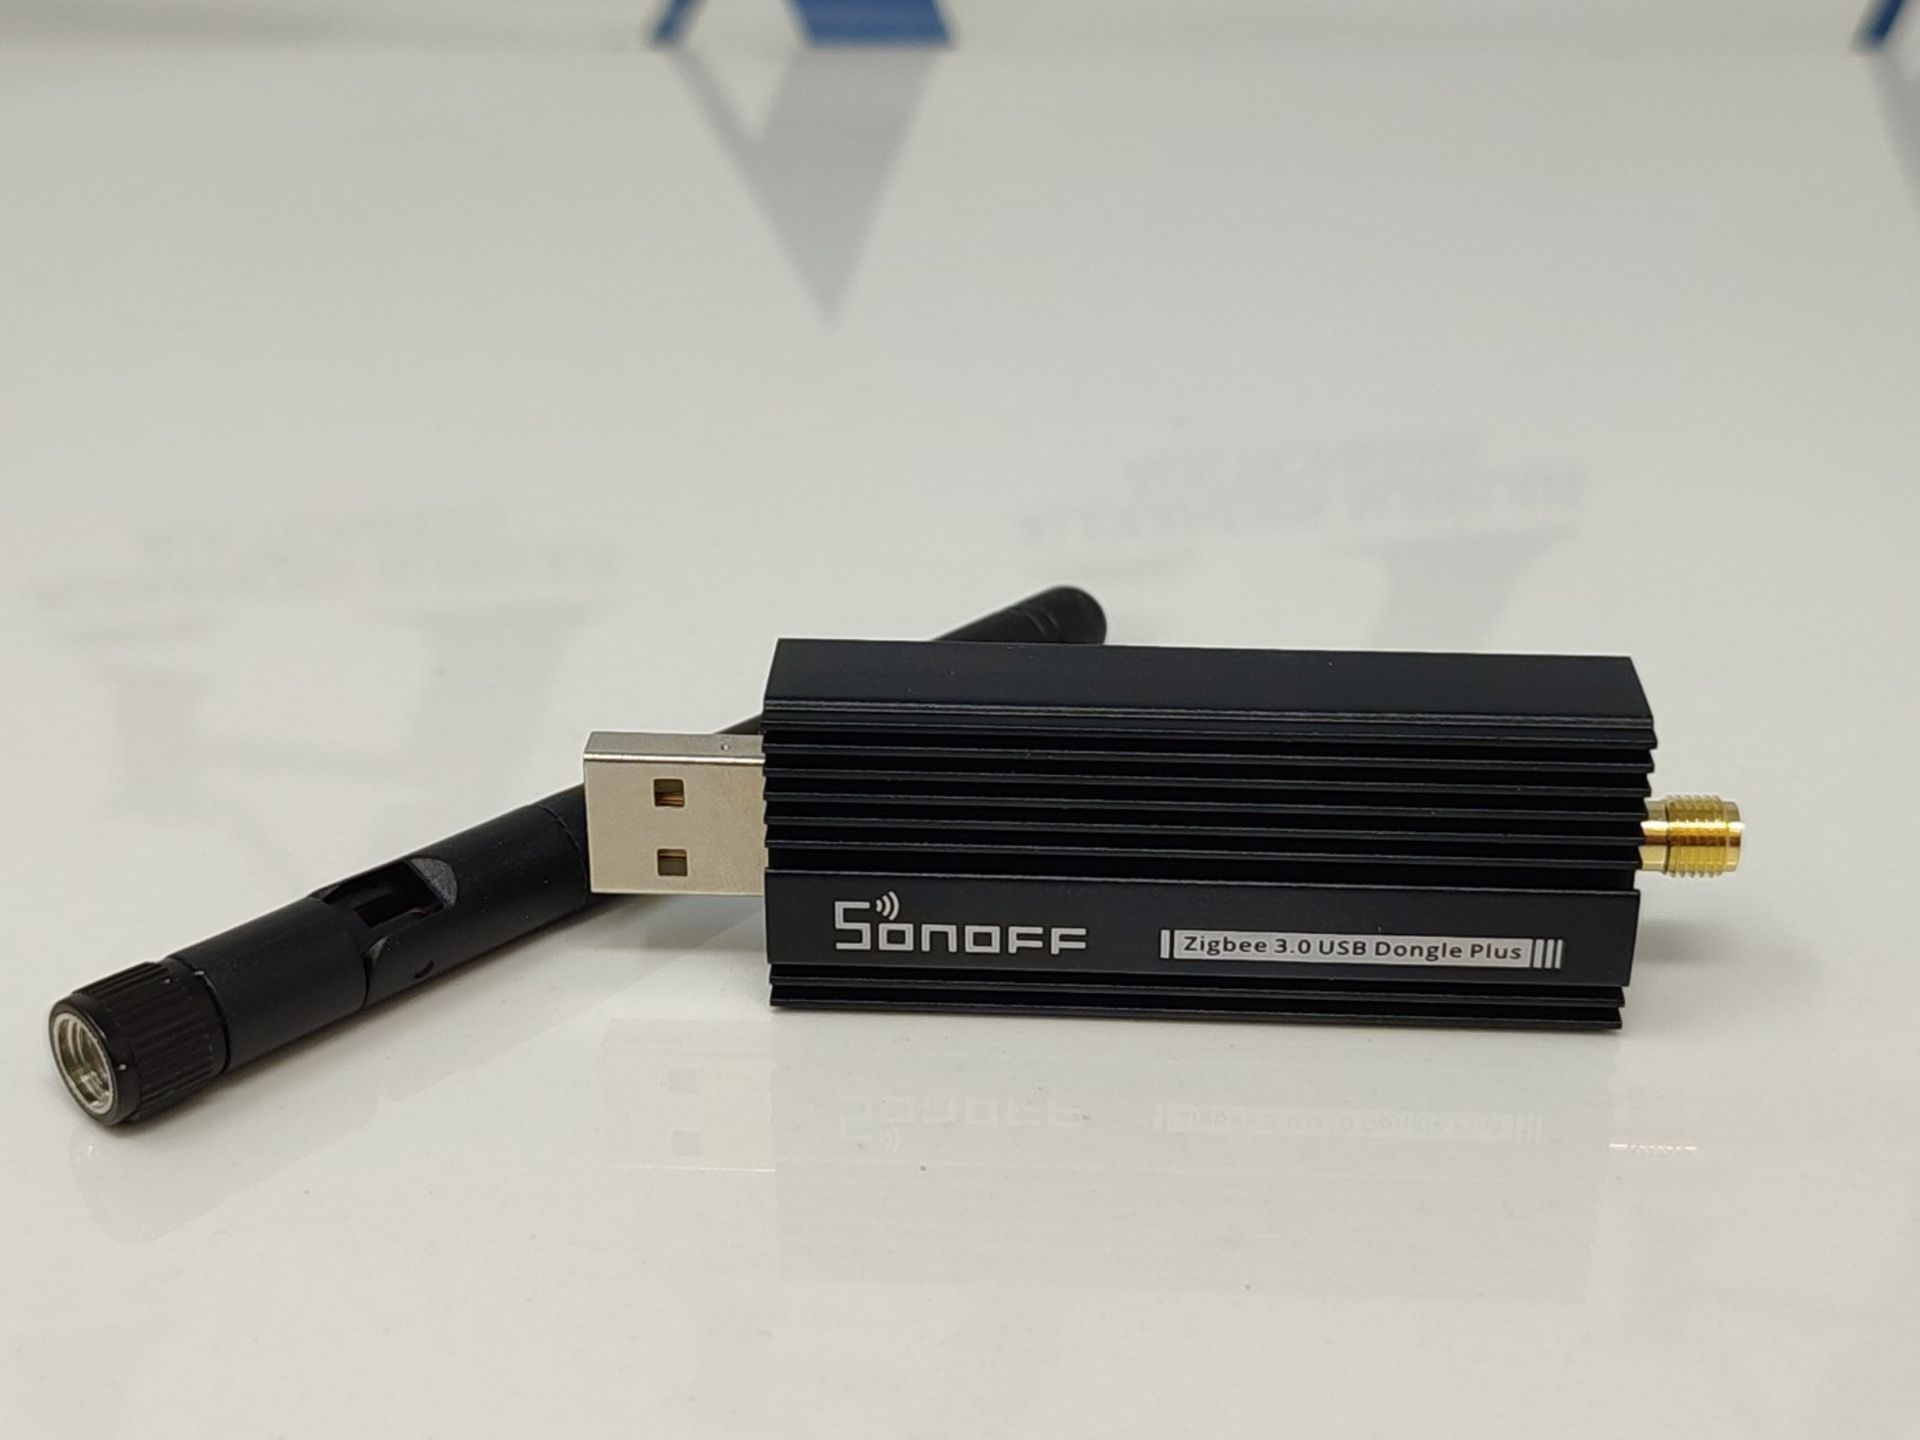 Zigbee Gateway, ZBDongle-E USB Zigbee 3.0 USB Dongle Plus, EFR32MG21 + CH9102F Zigbee - Image 2 of 4